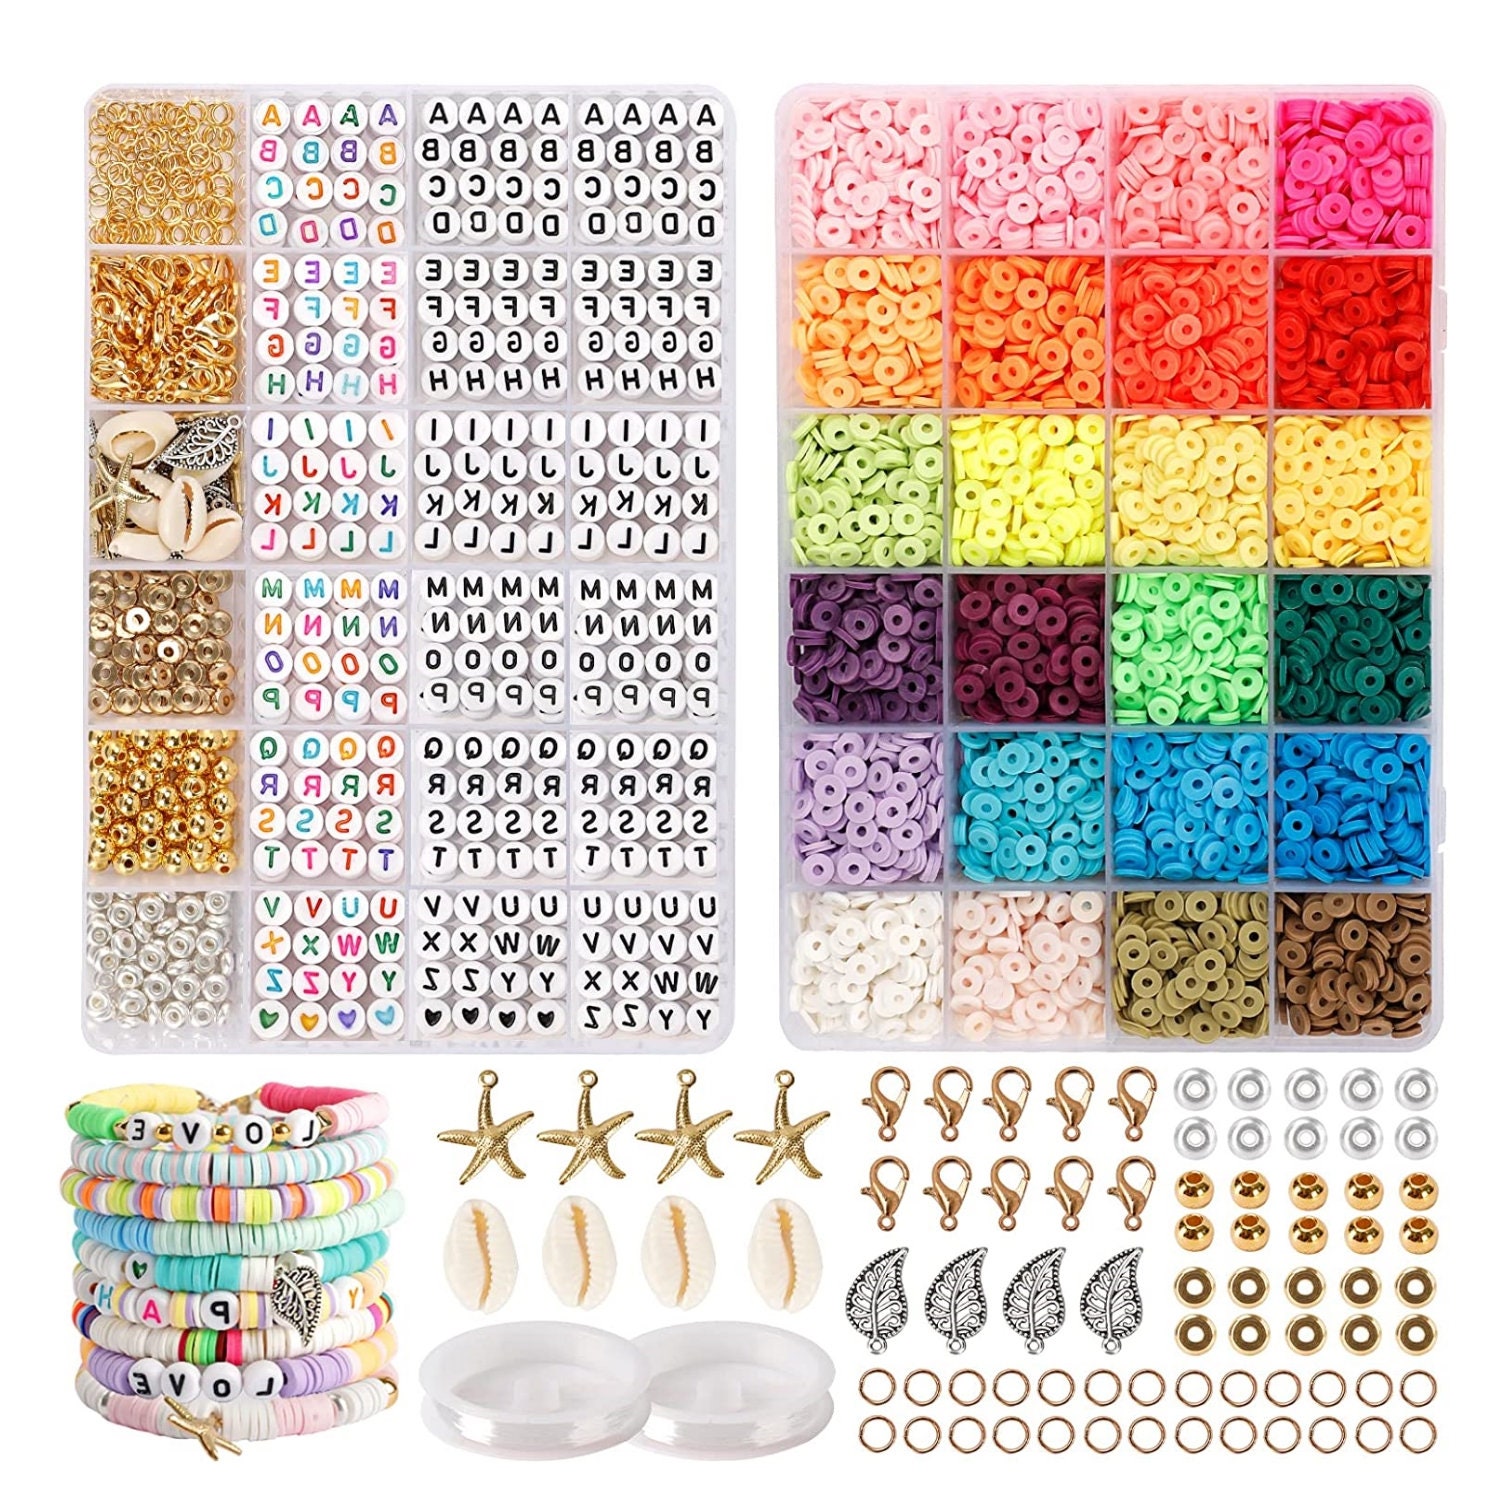 Bracelet Making Kit Bead Kit, Bead for Bracelet, 6000 Beads, Kids